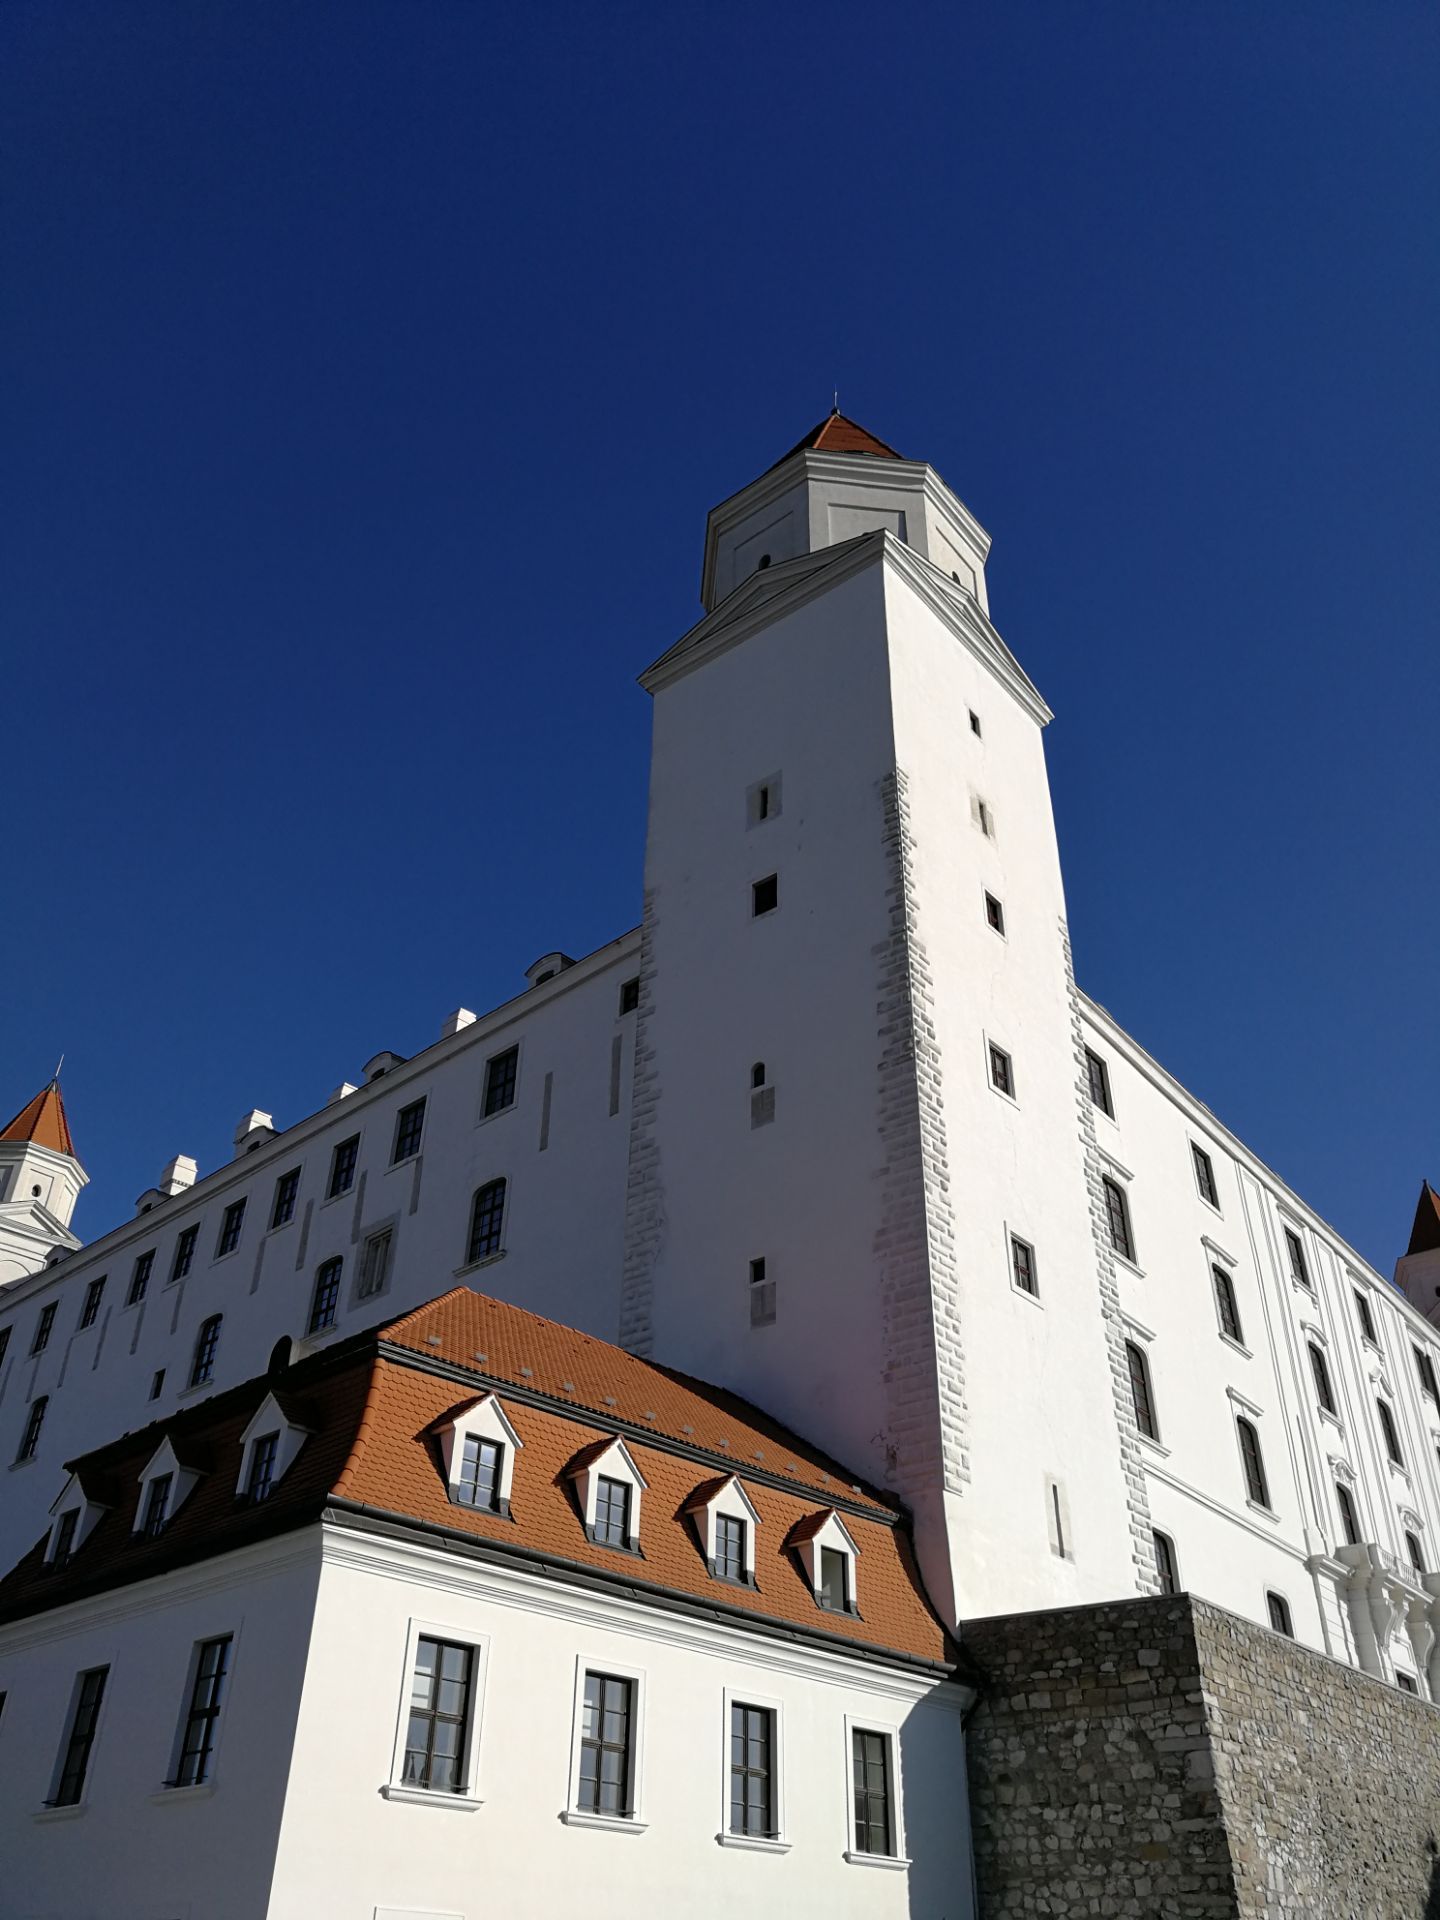 2020布拉迪斯拉发城堡游玩攻略,布拉迪斯拉发城堡,是斯洛伐